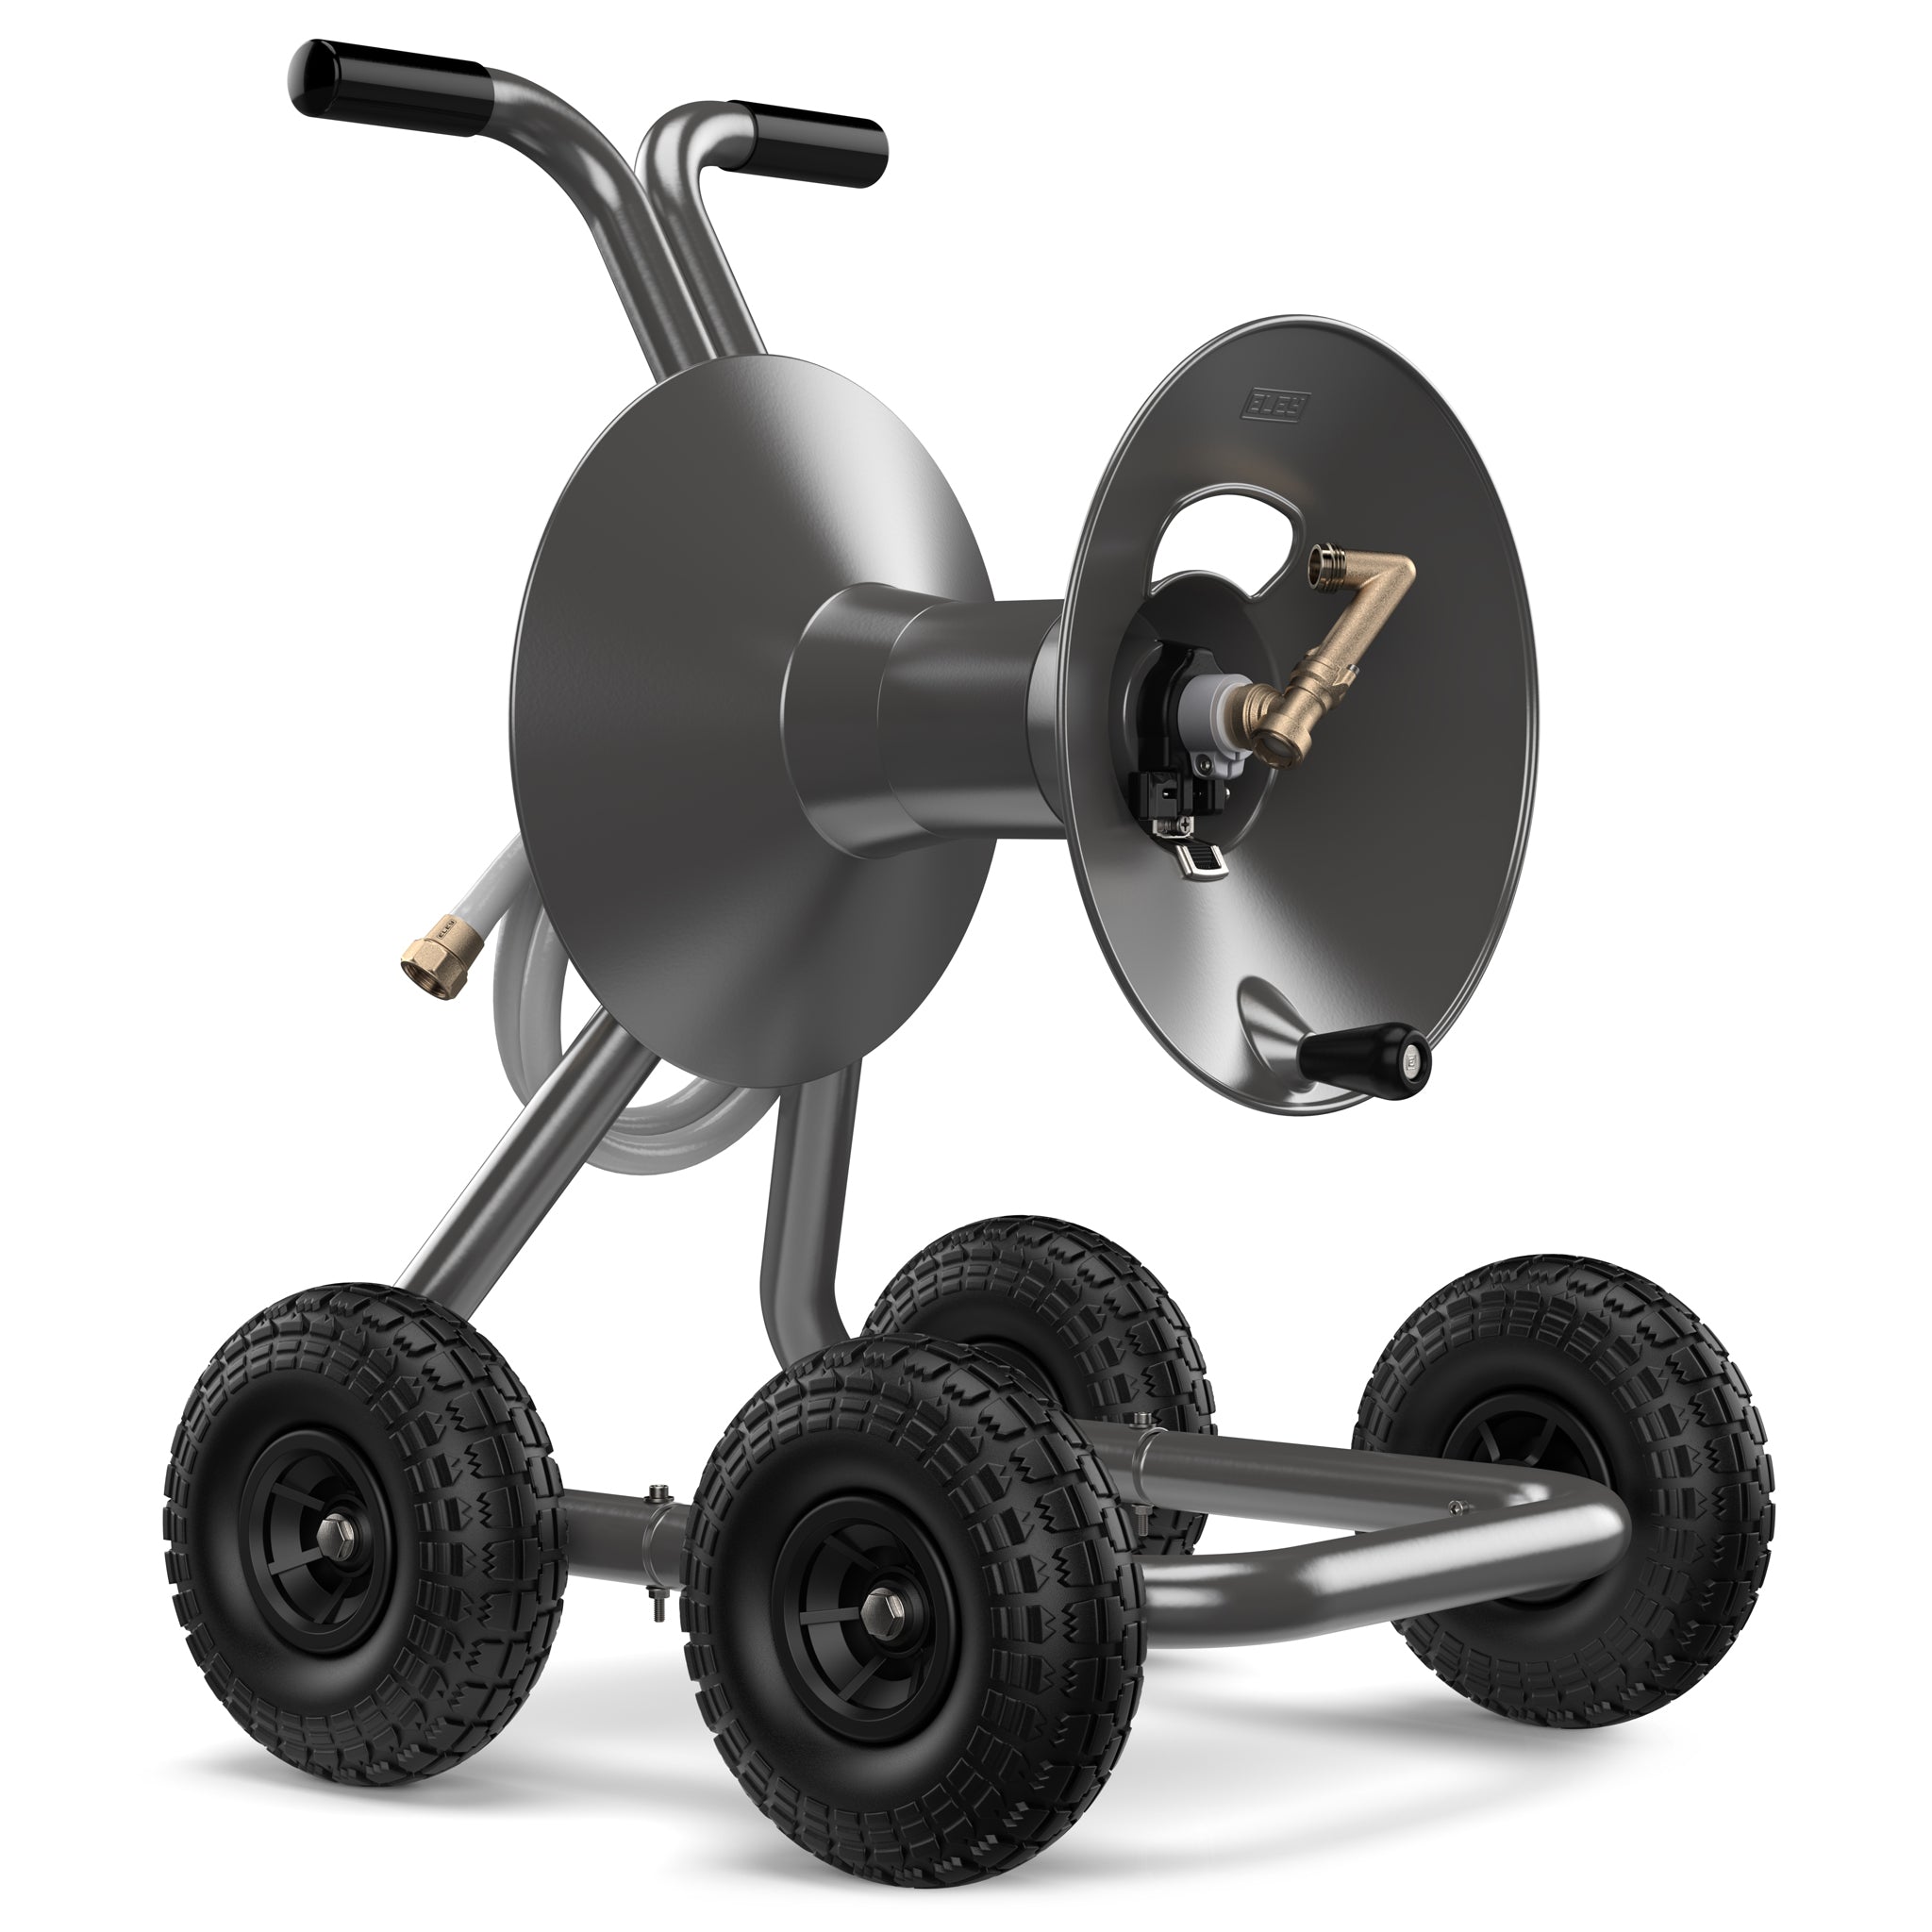 Garden Hose Reel Cart - 4 Wheels Portable Garden Hose Reel Cart